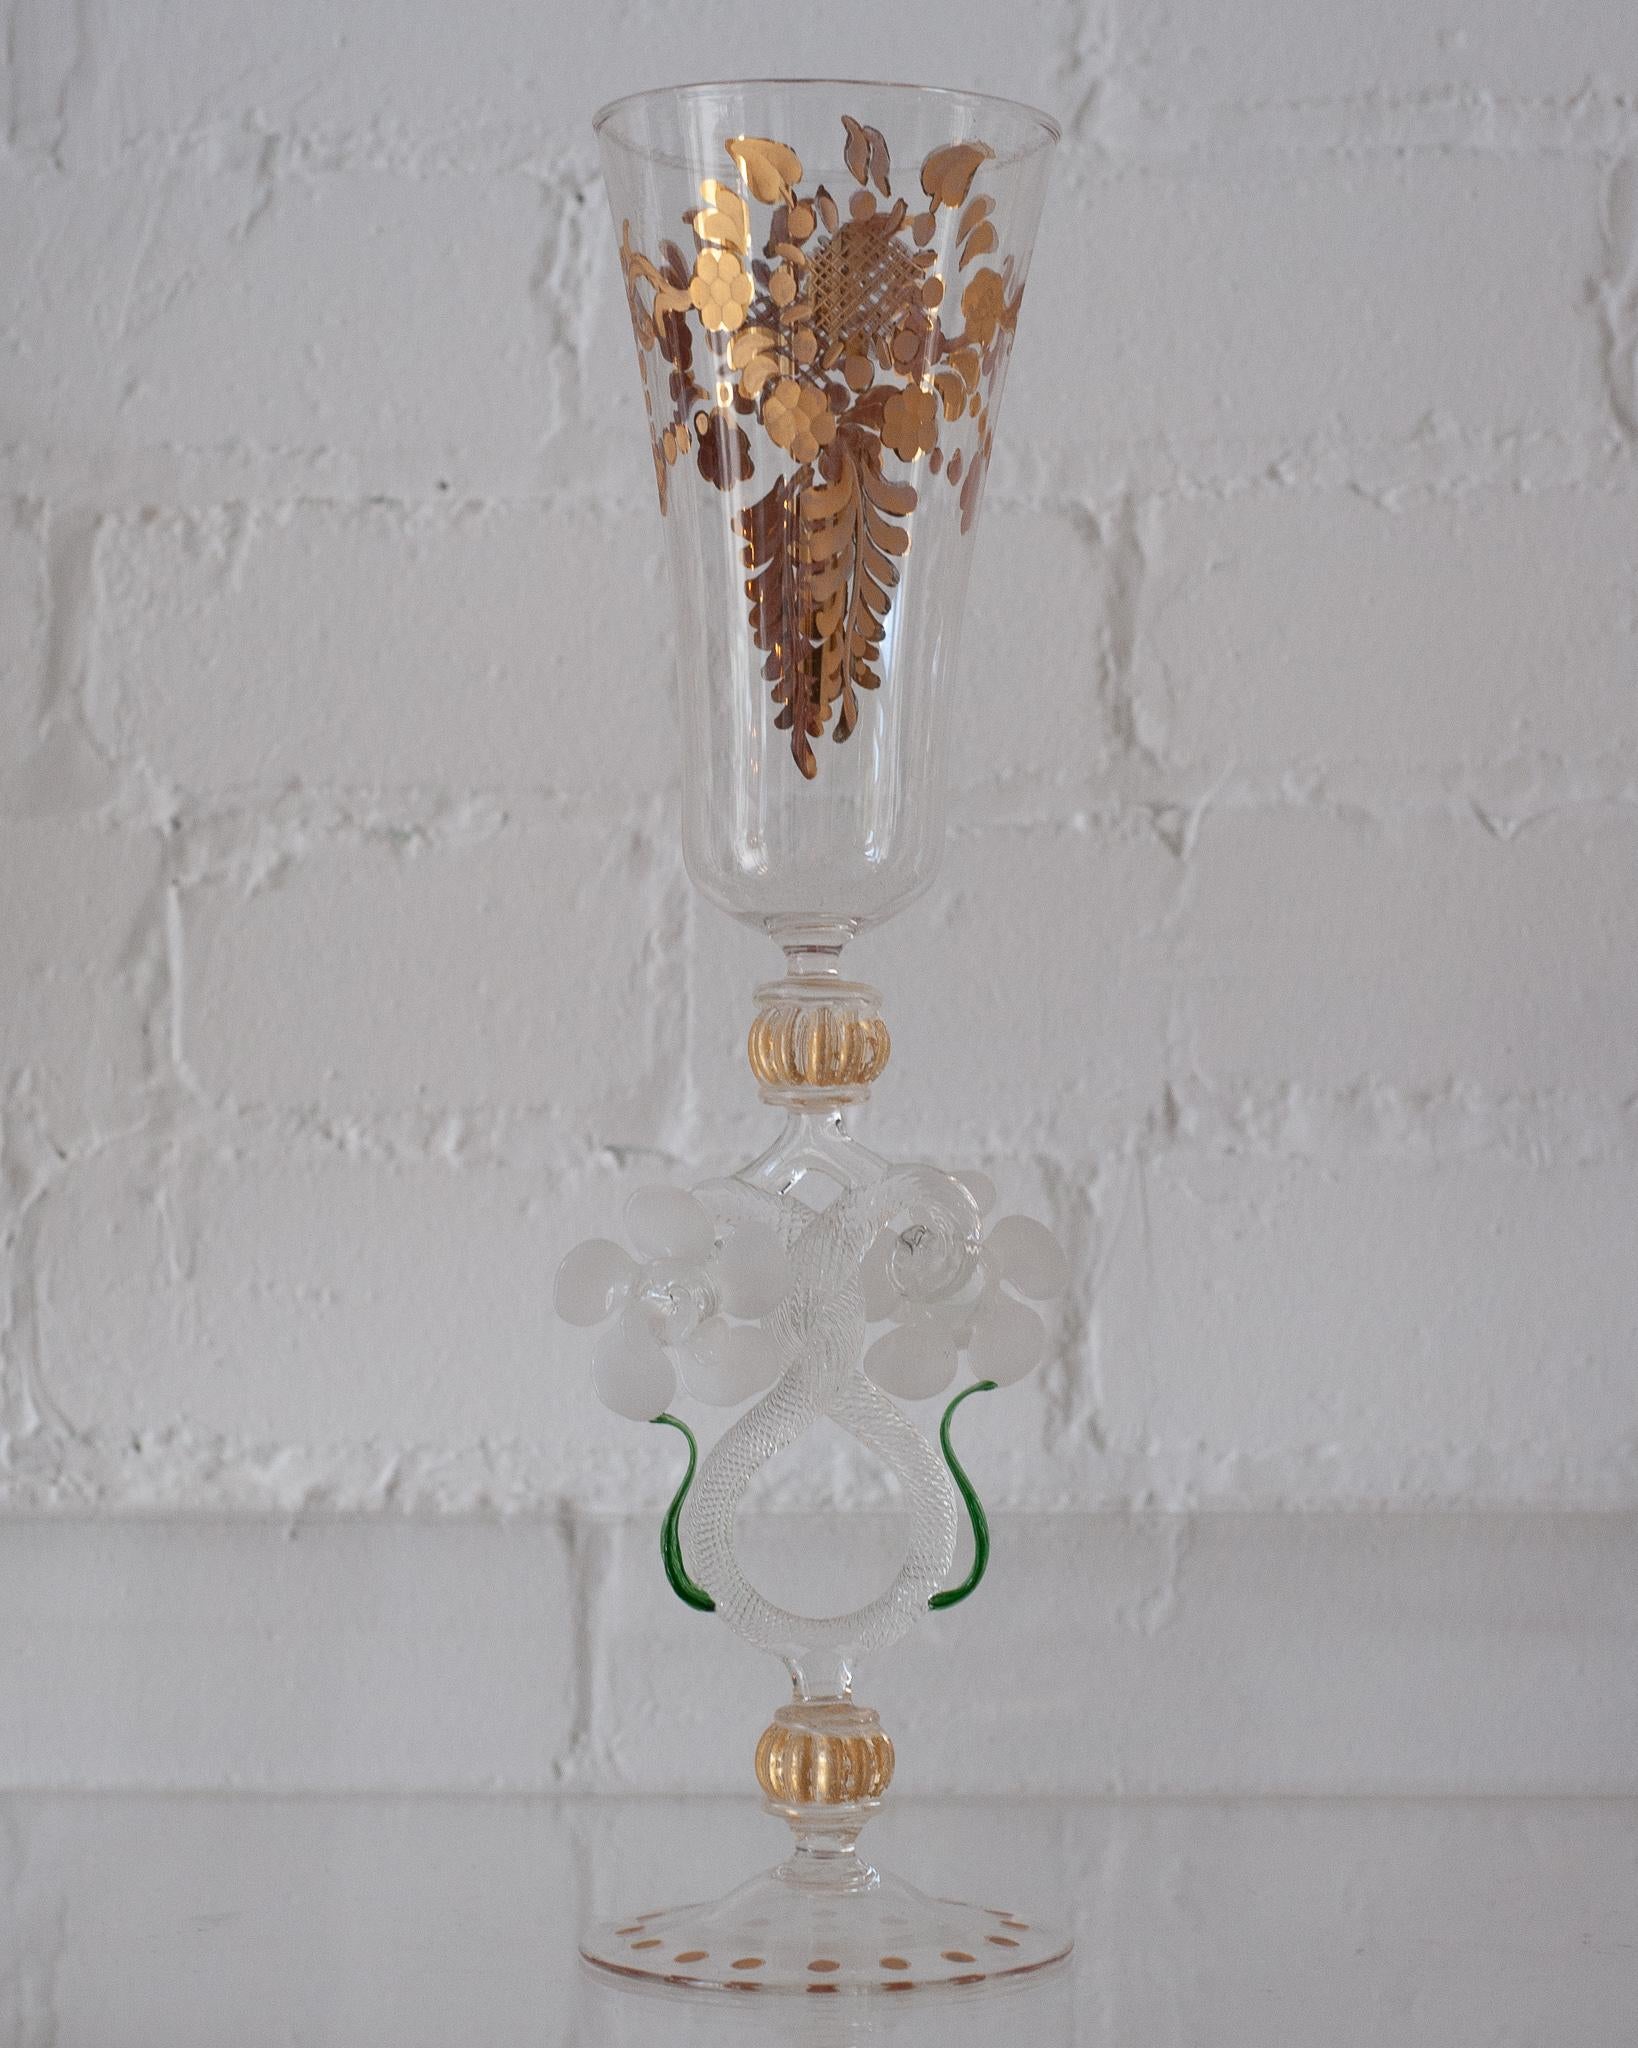 Rehaussez votre table avec une flûte/vase ancienne en verre de Murano soufflé à la main. Délicat et orné, chaque verre présente un design et une couleur uniques, et aucune pièce de Murano n'est exactement identique. Ce sont de véritables œuvres